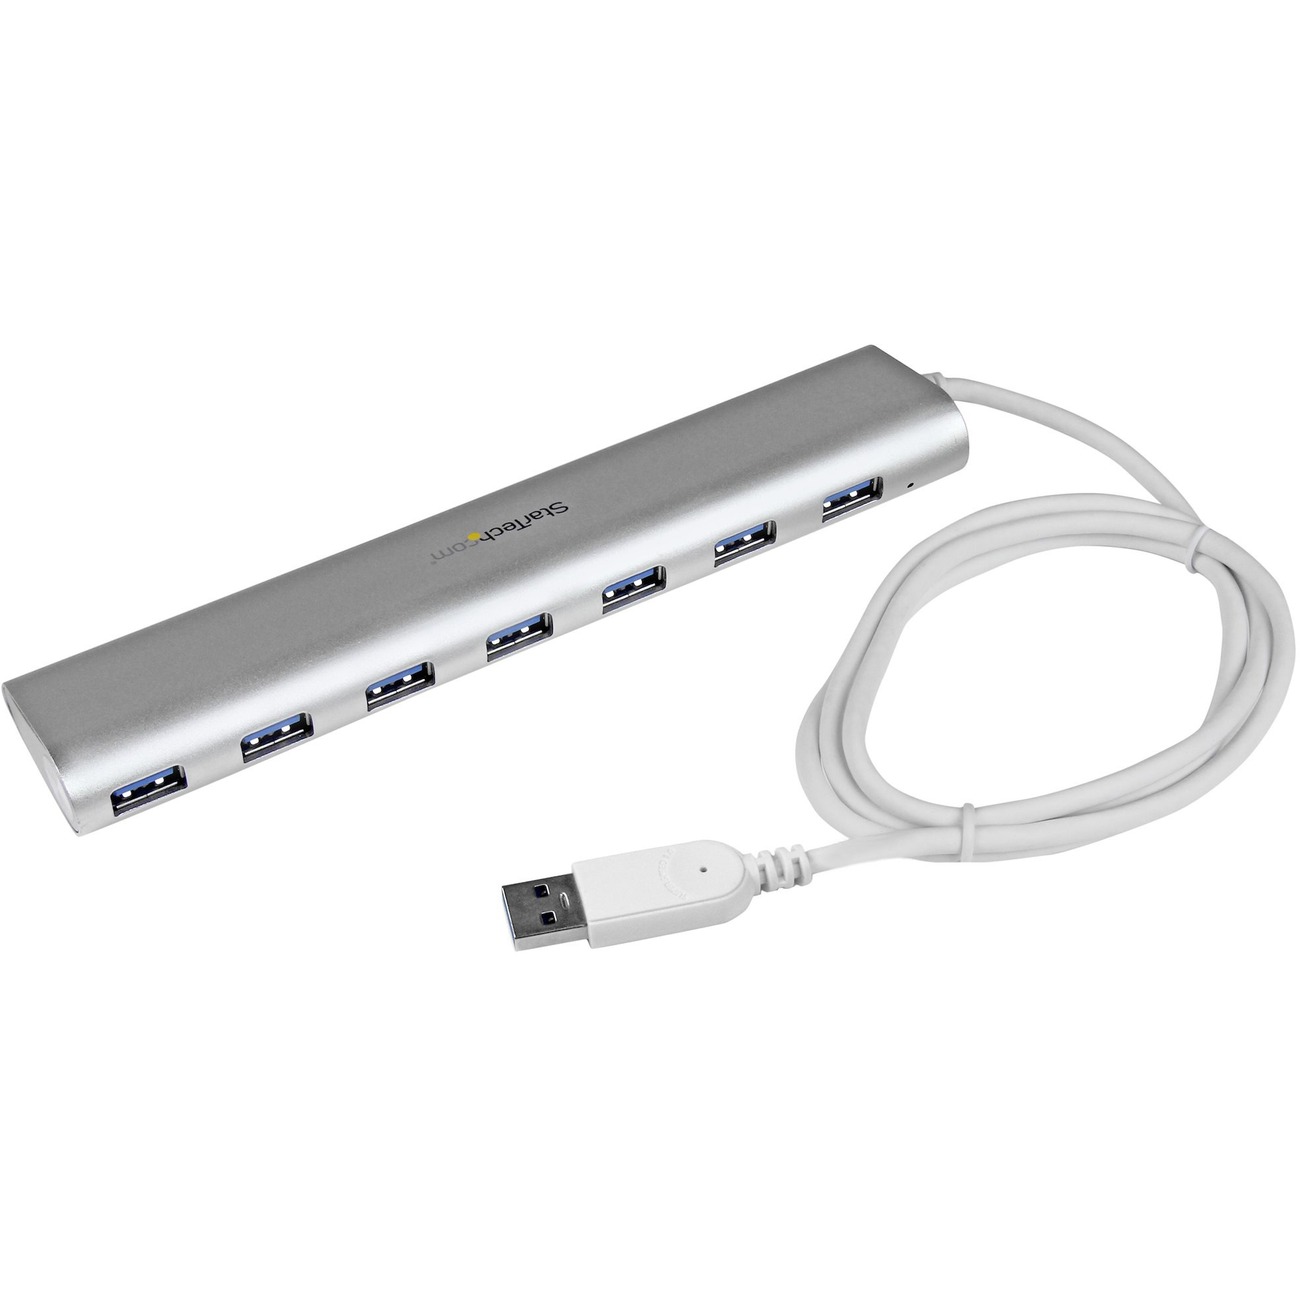 Tripp Lite 7-Port USB-A Mini Hub - USB 3.2 Gen 1, International Plug  Adapters, Aluminum Housing - hub - 7 ports